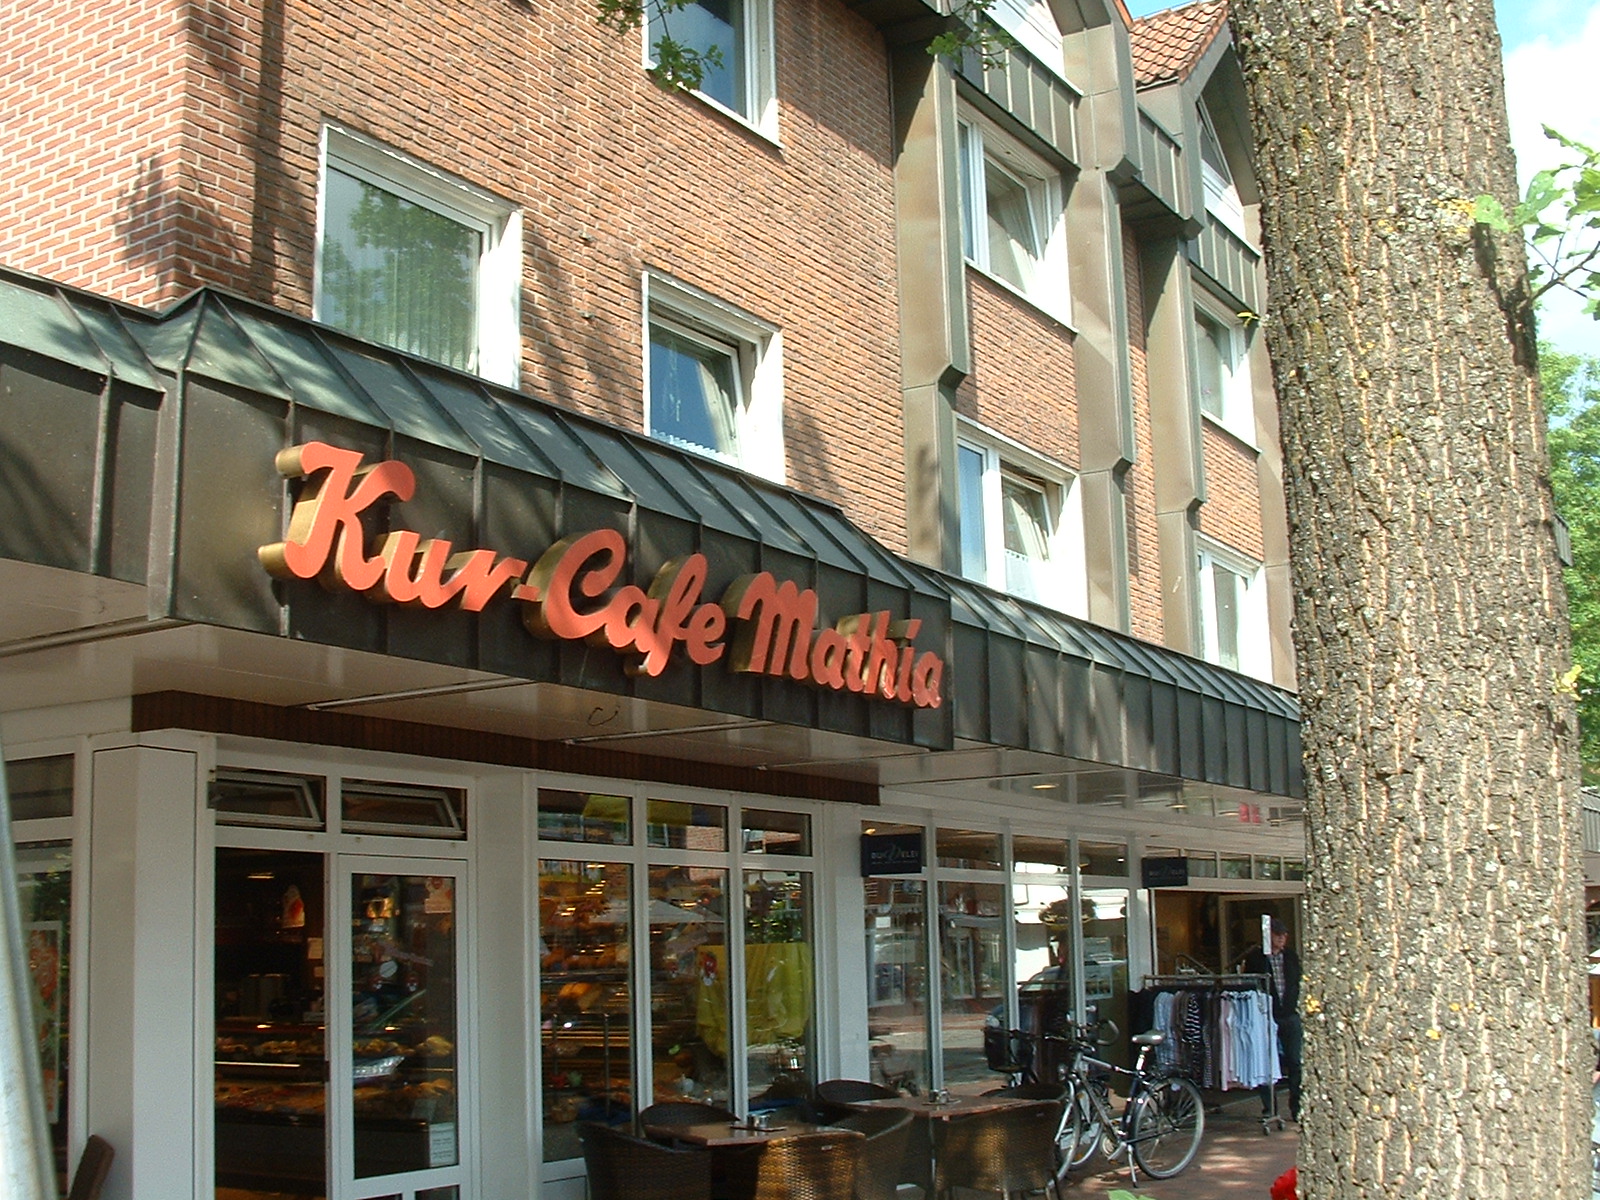 Cafe Mathia in Bad Zwischenahn